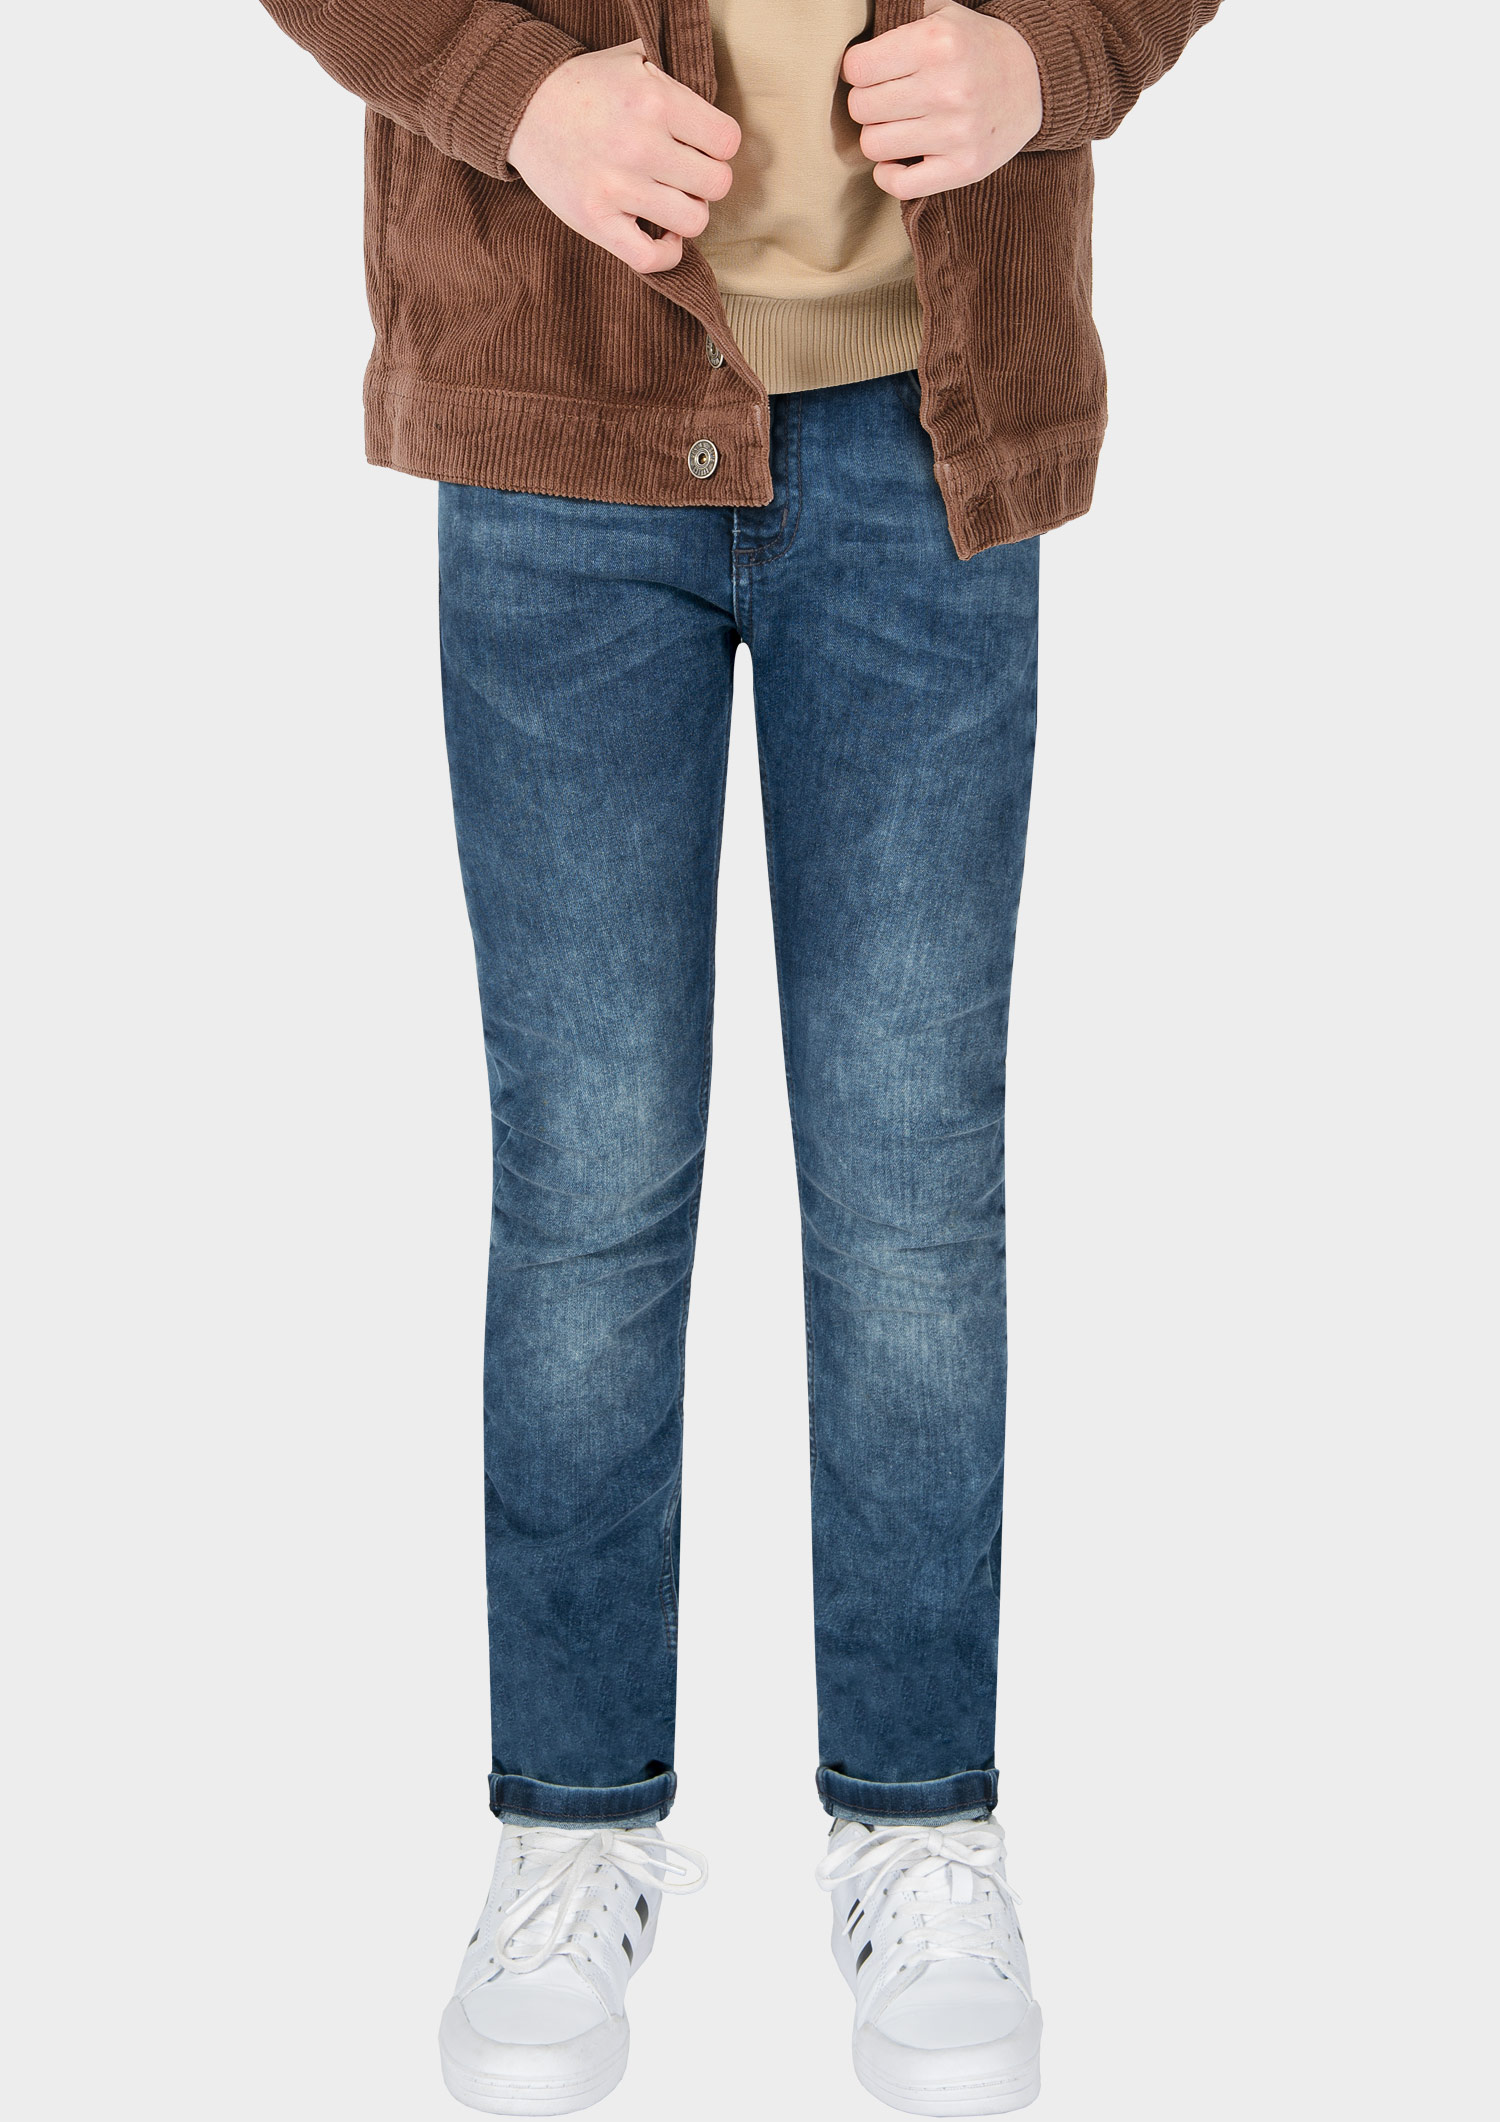 0233-NOS Boys Jeans Skinny verfügbar in Slim,Normal,Wide